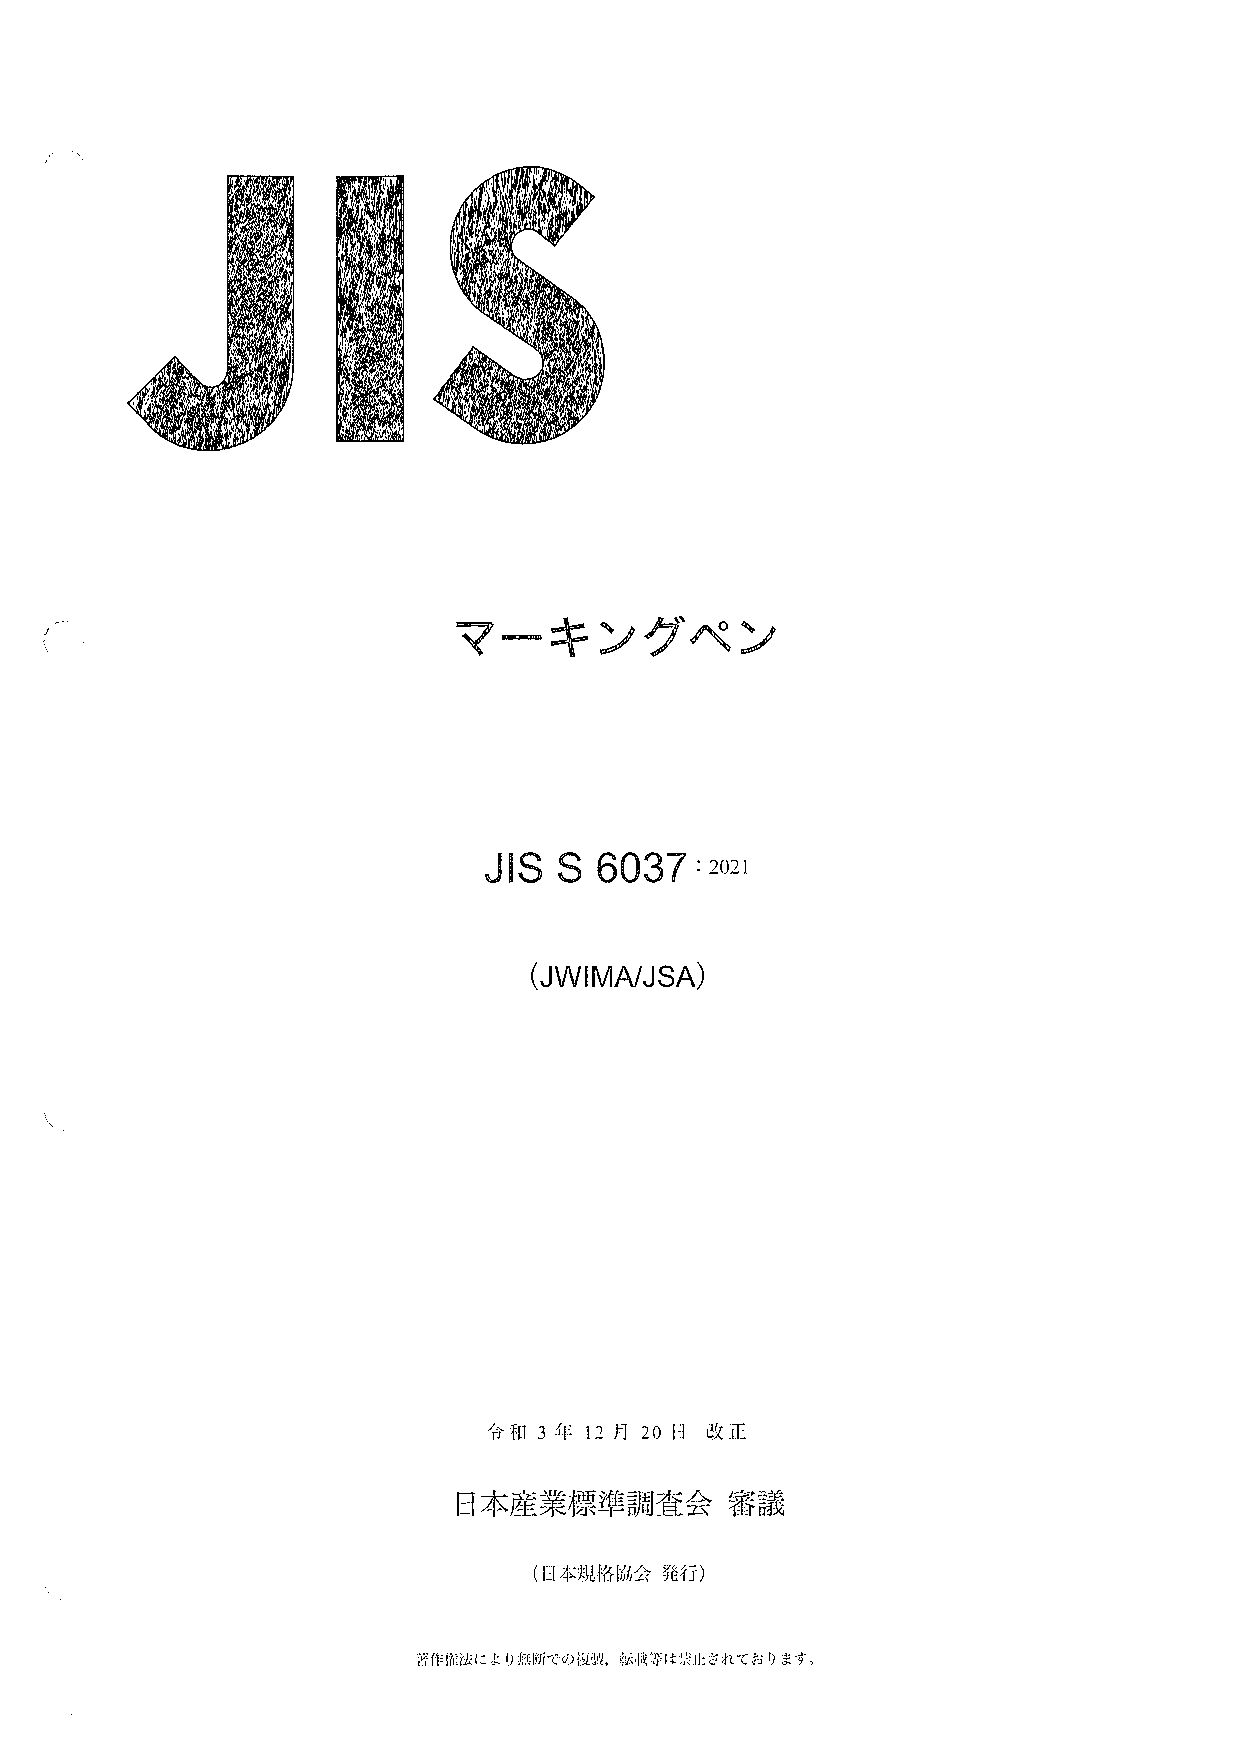 JIS S 6037:2021